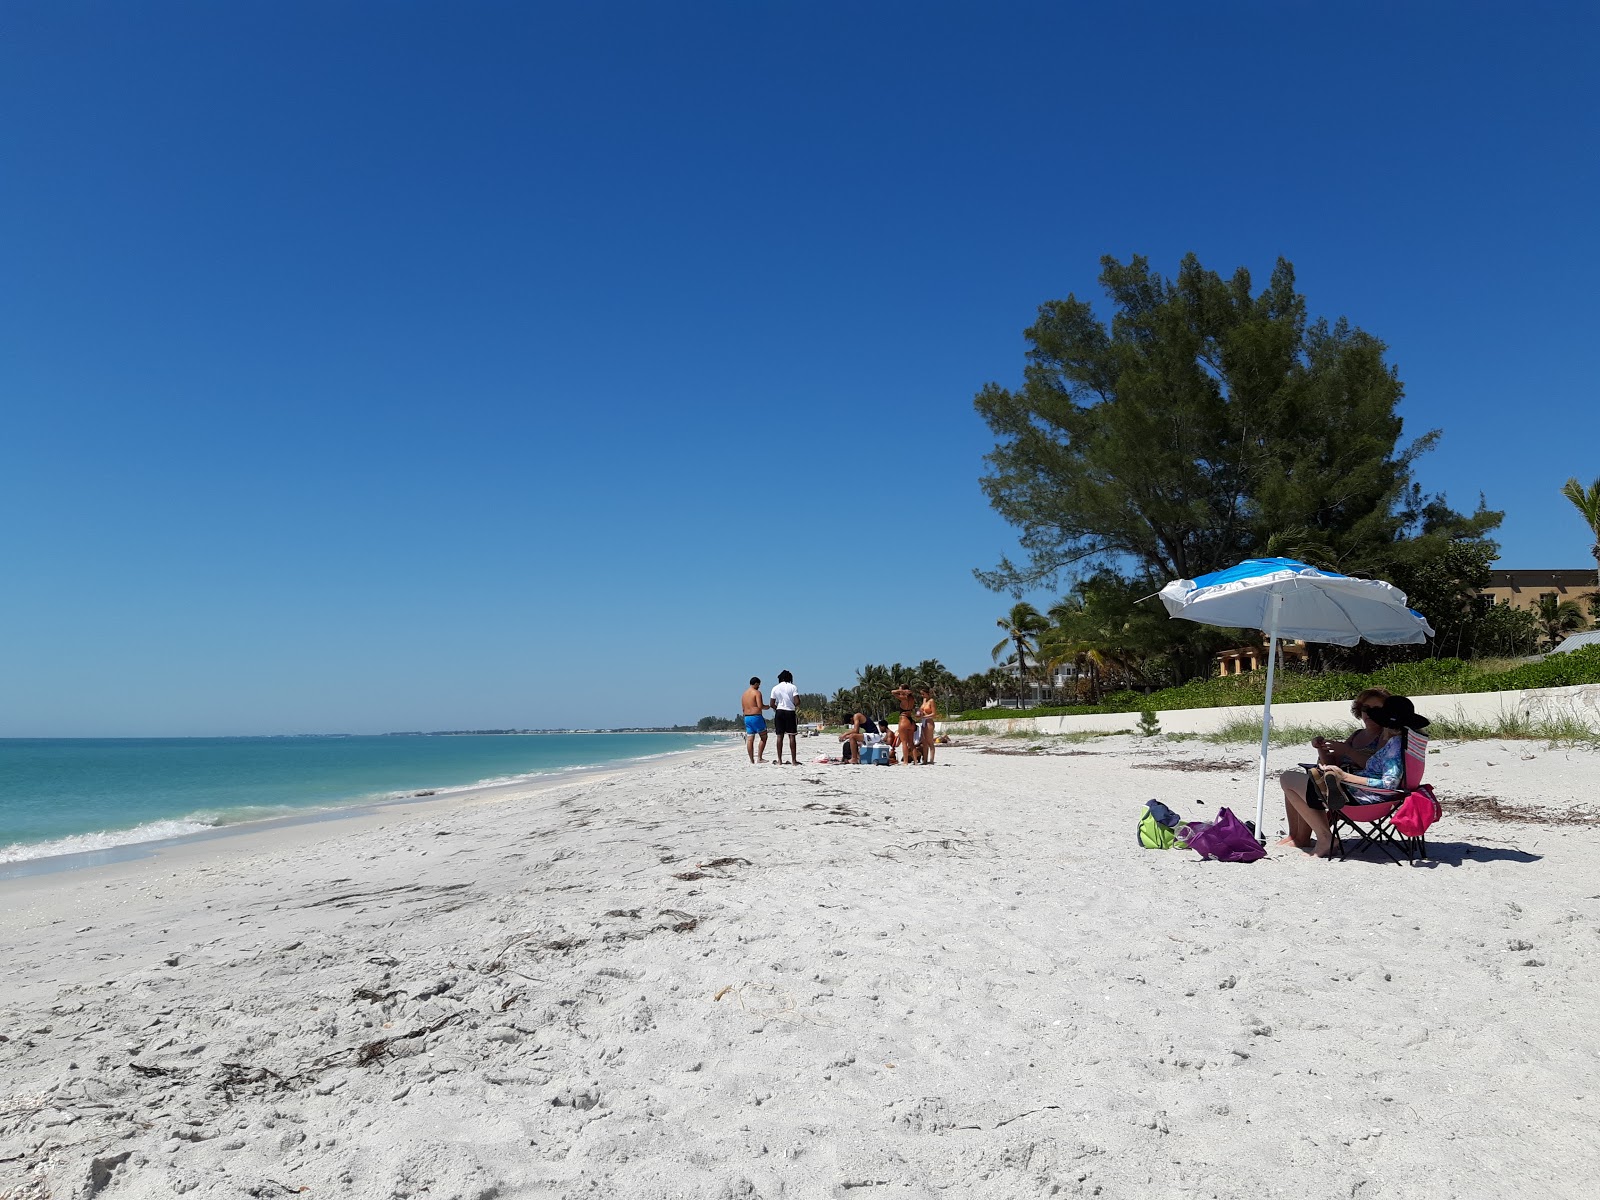 Fotografija Gasparilla Island beach priljubljeno mesto med poznavalci sprostitve